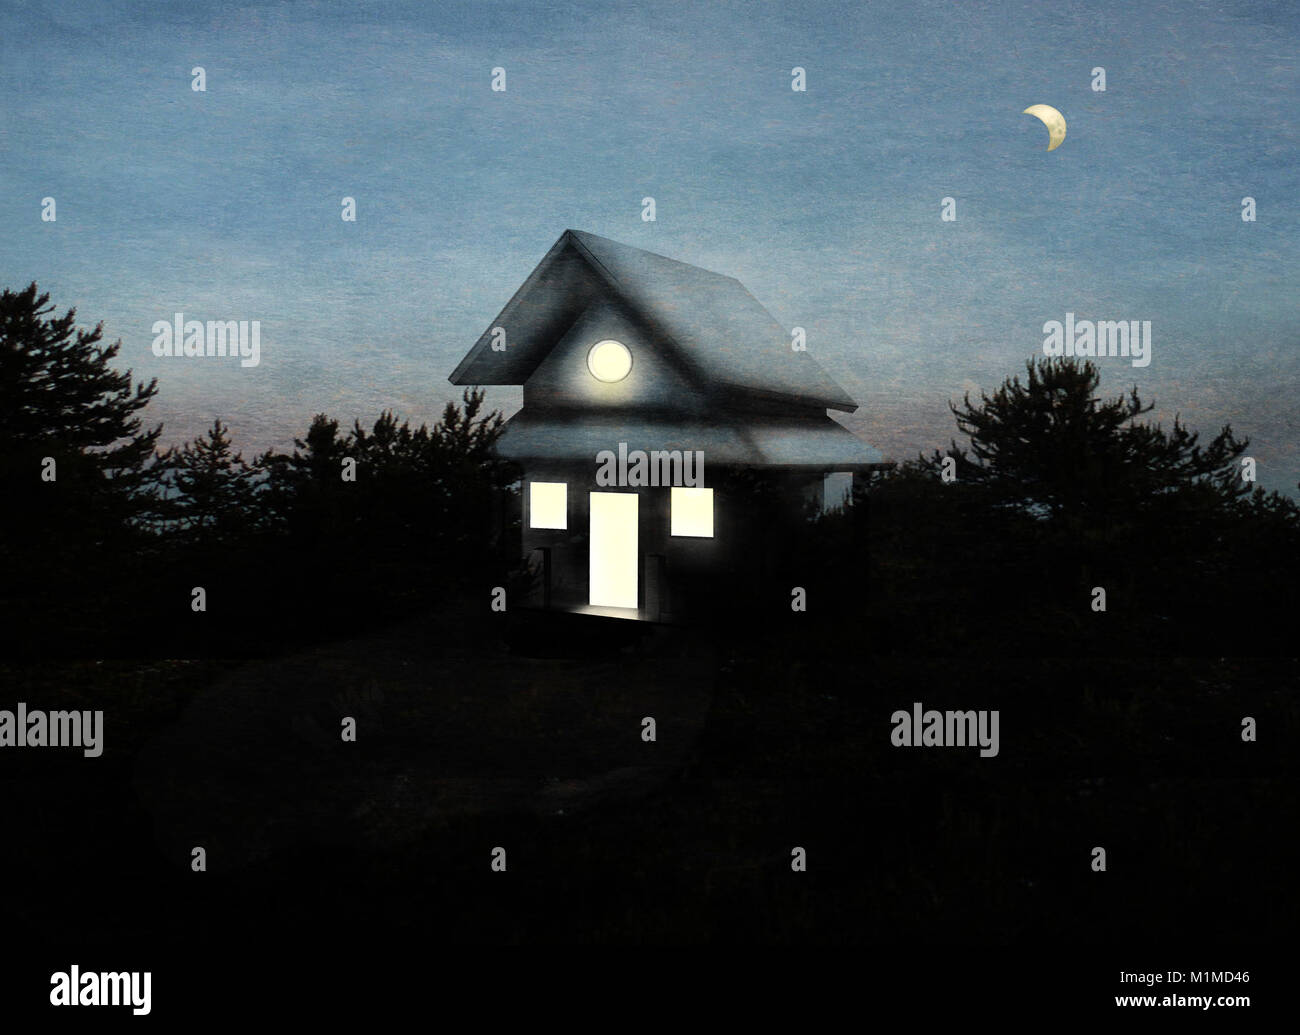 Una bella immagine che rappresenta una casa isolata in una foresta alla prima luce del giorno Foto Stock